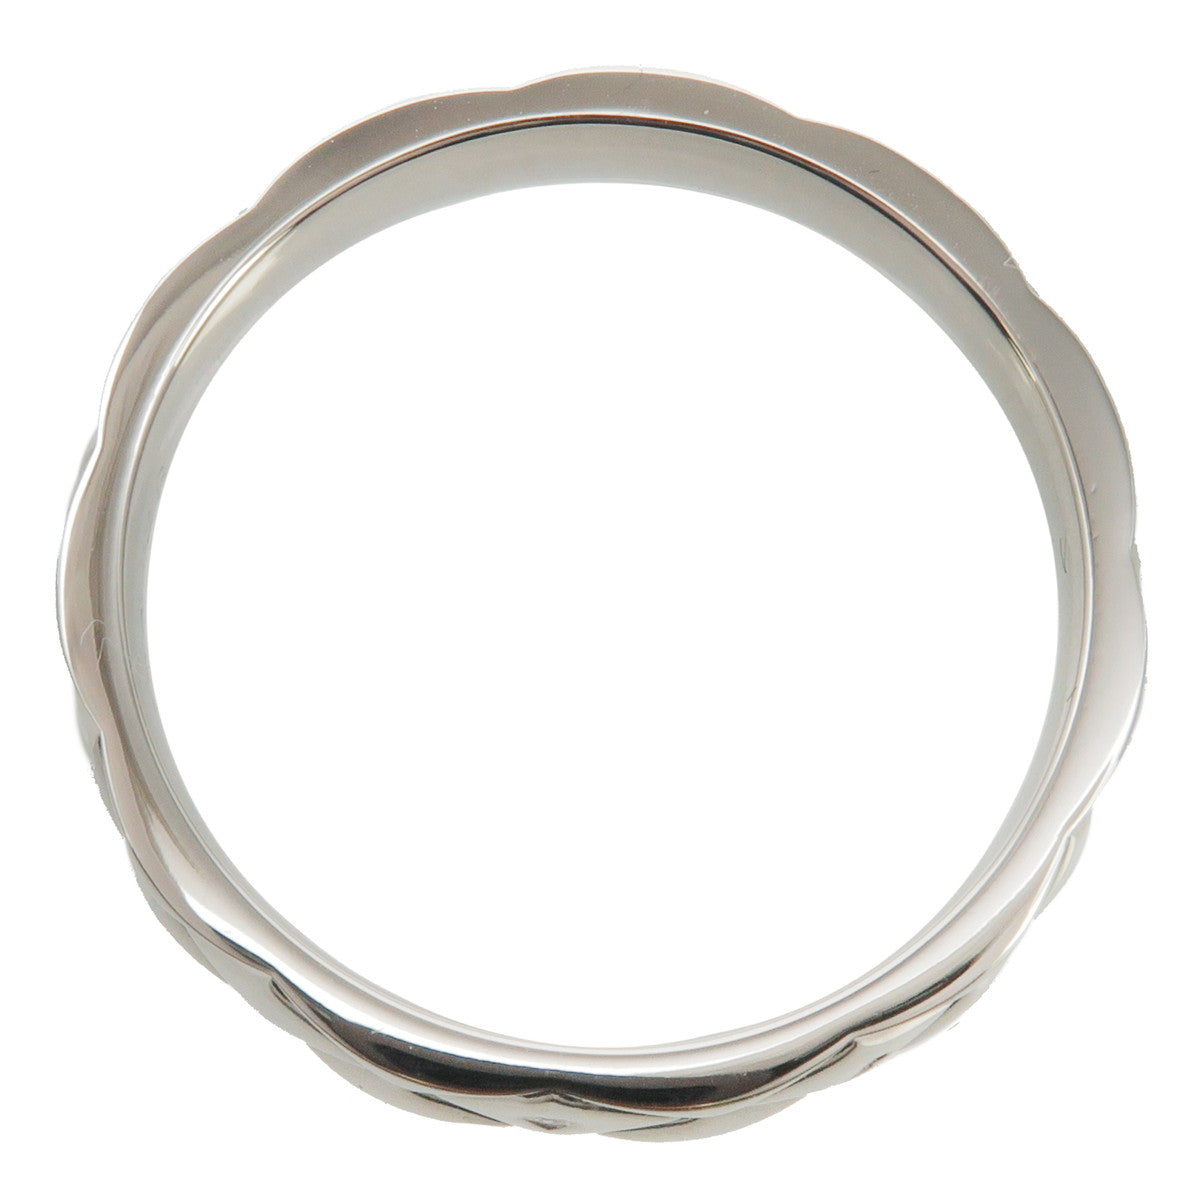 CHANEL Matelasse Ring Medium 950 Platinum #56 US7.5 HK16.5 EU56